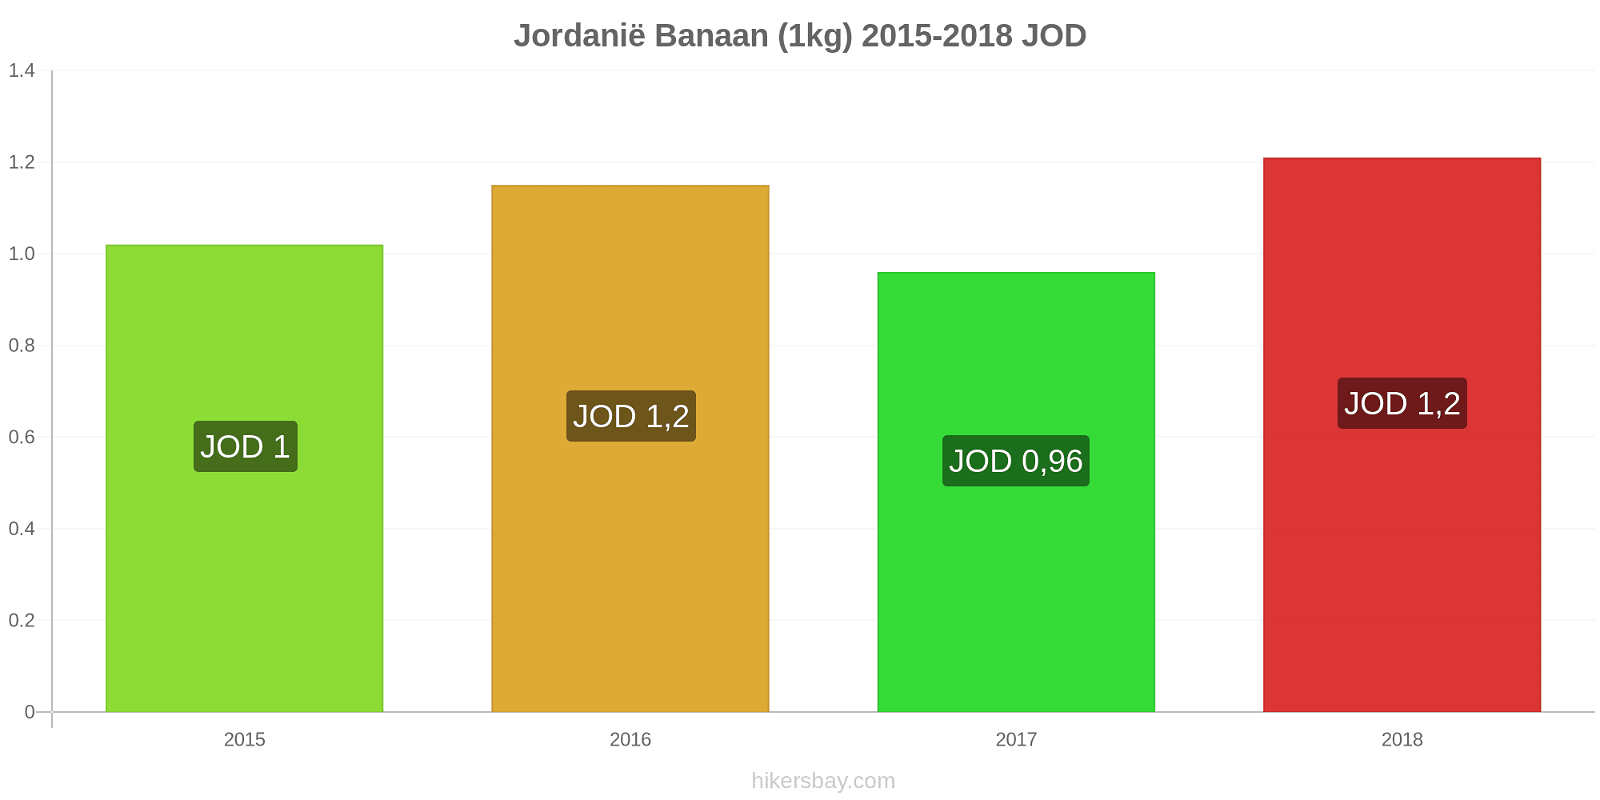 Jordanië prijswijzigingen Bananen (1kg) hikersbay.com